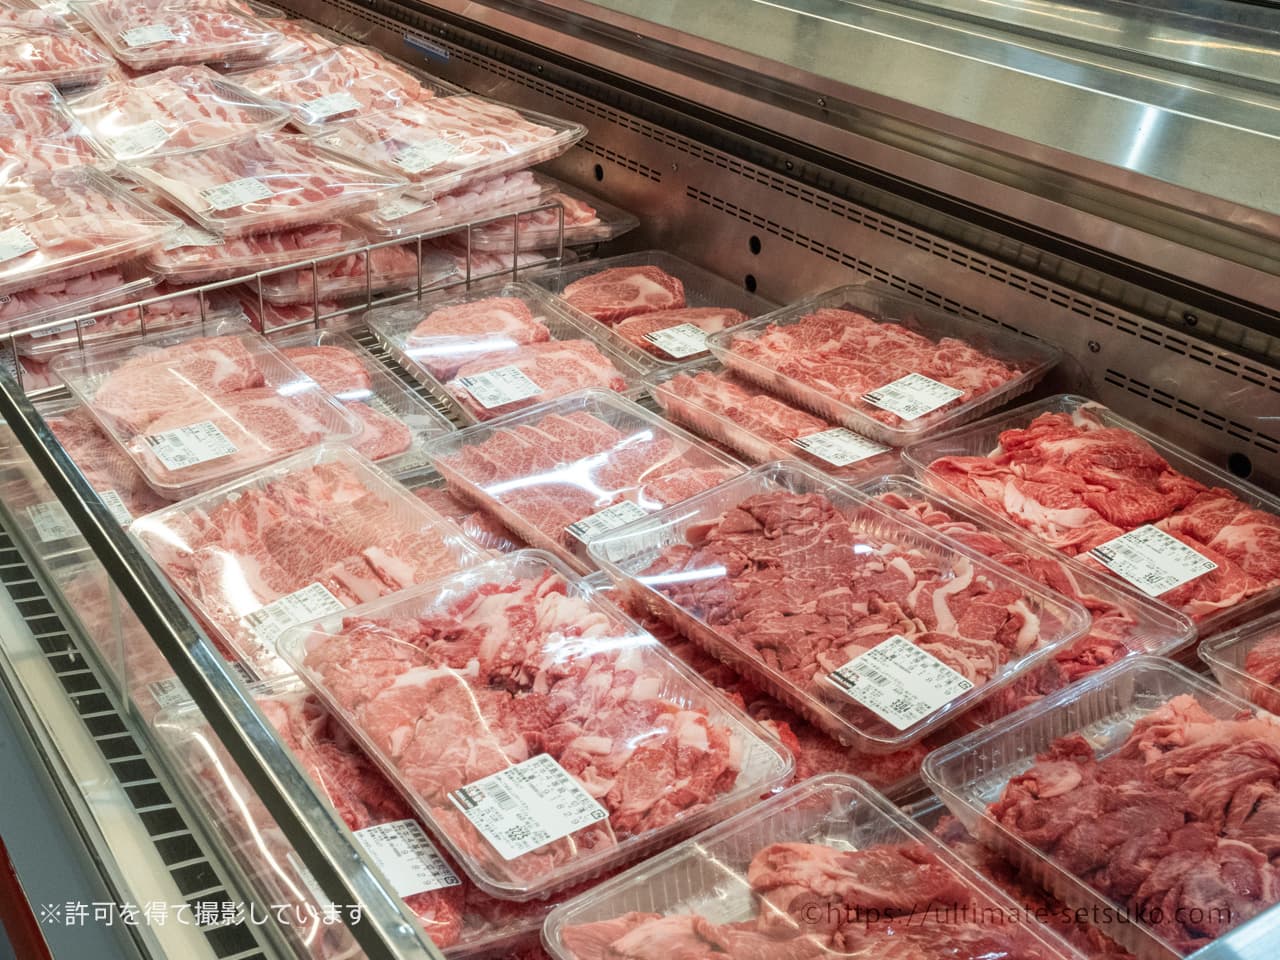 コストコのお肉 厳選おすすめ商品ランキングtop56 21年最新版